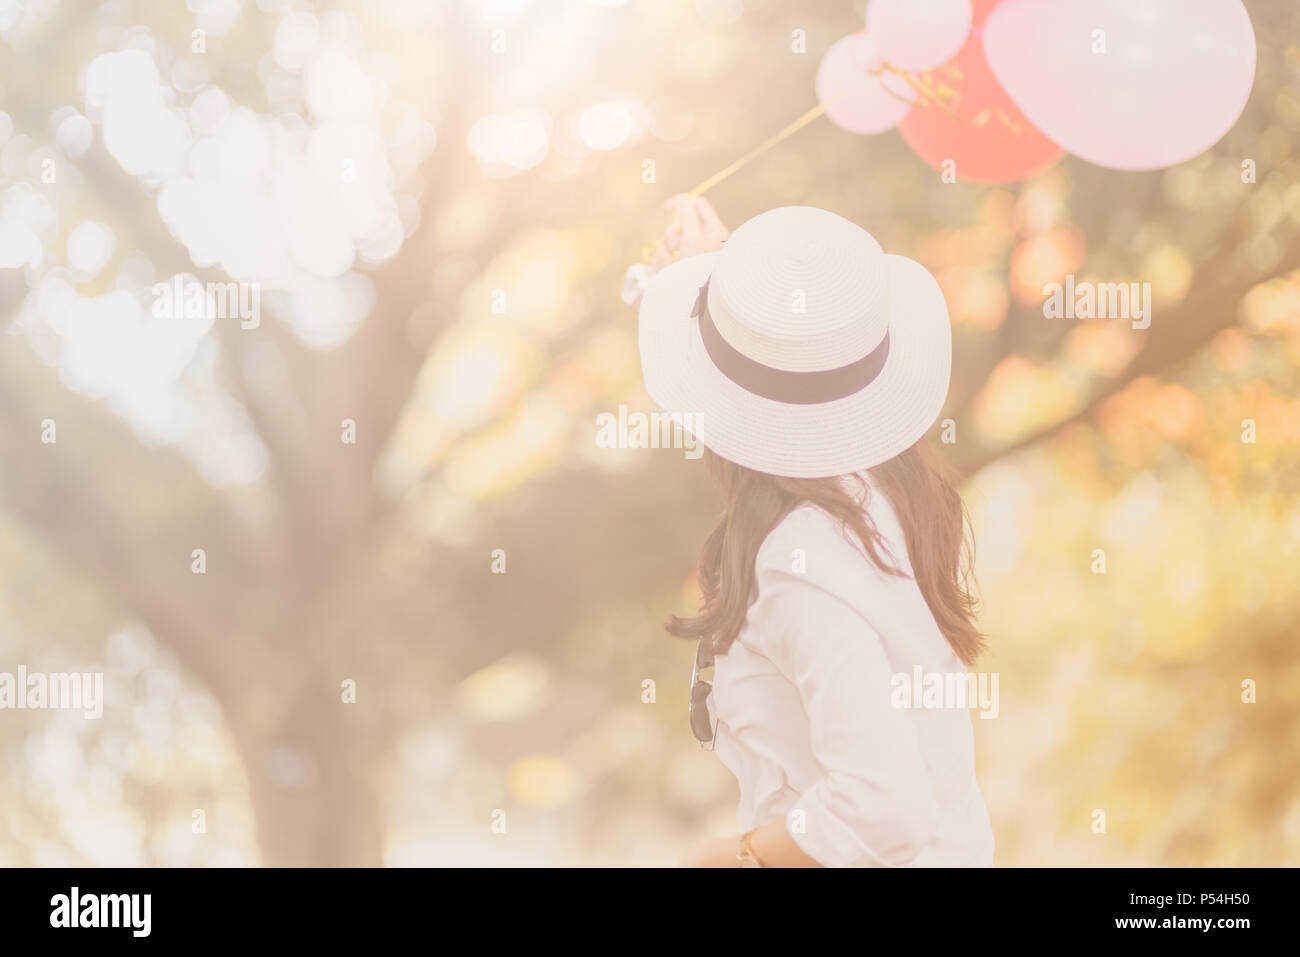 Rückseite der Happy girl Holding Ballon auf vintage Tone, Freiheit und Freizeit Konzept Stockfoto